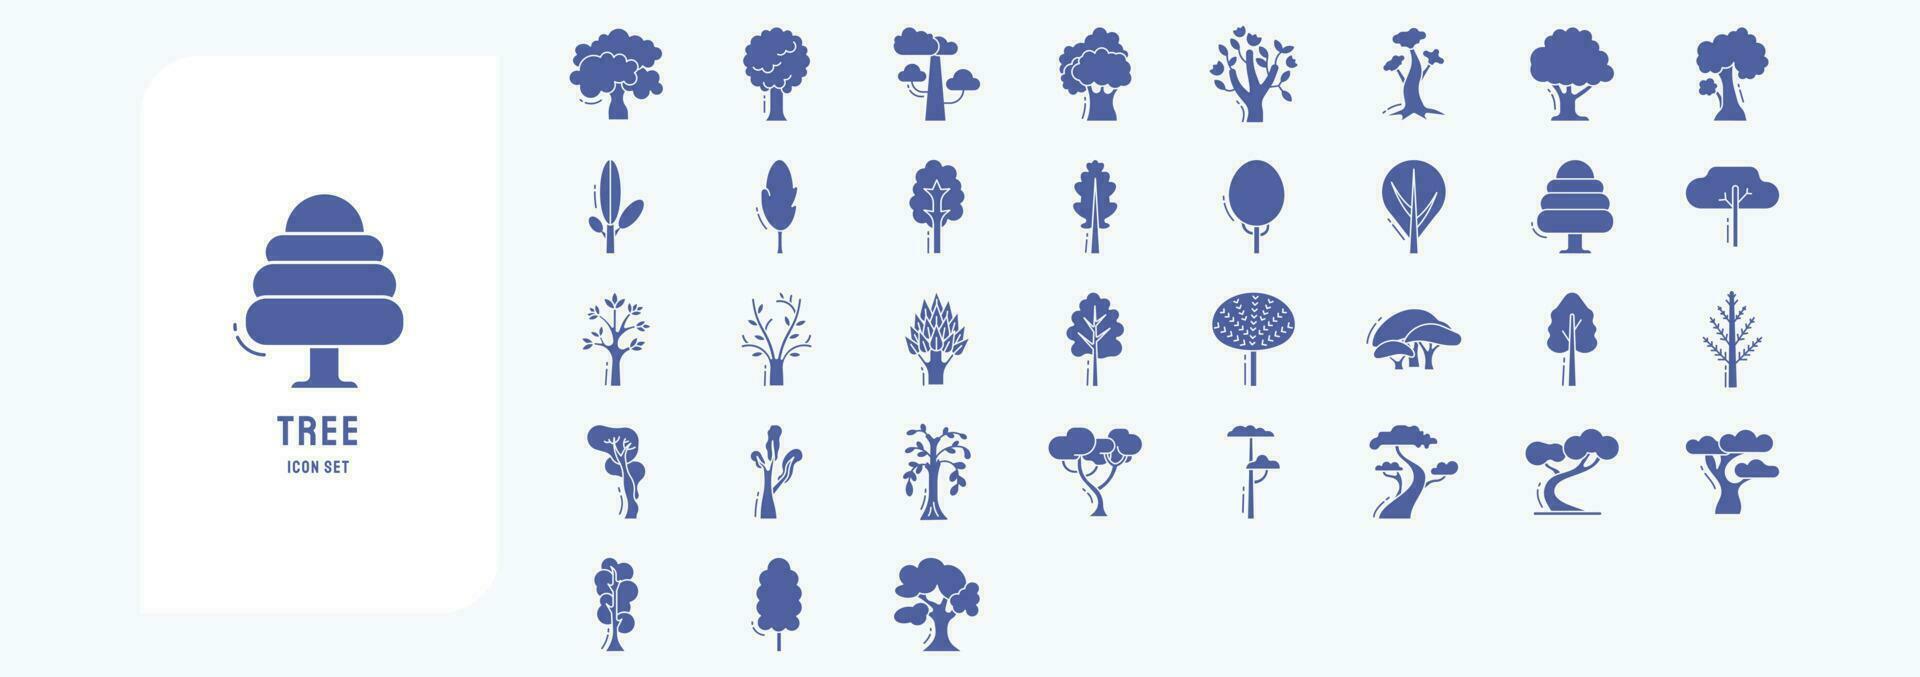 verzameling van pictogrammen verwant naar boom, inclusief pictogrammen Leuk vinden appel, sprinkhaan, magnolia, esdoorn- en meer vector